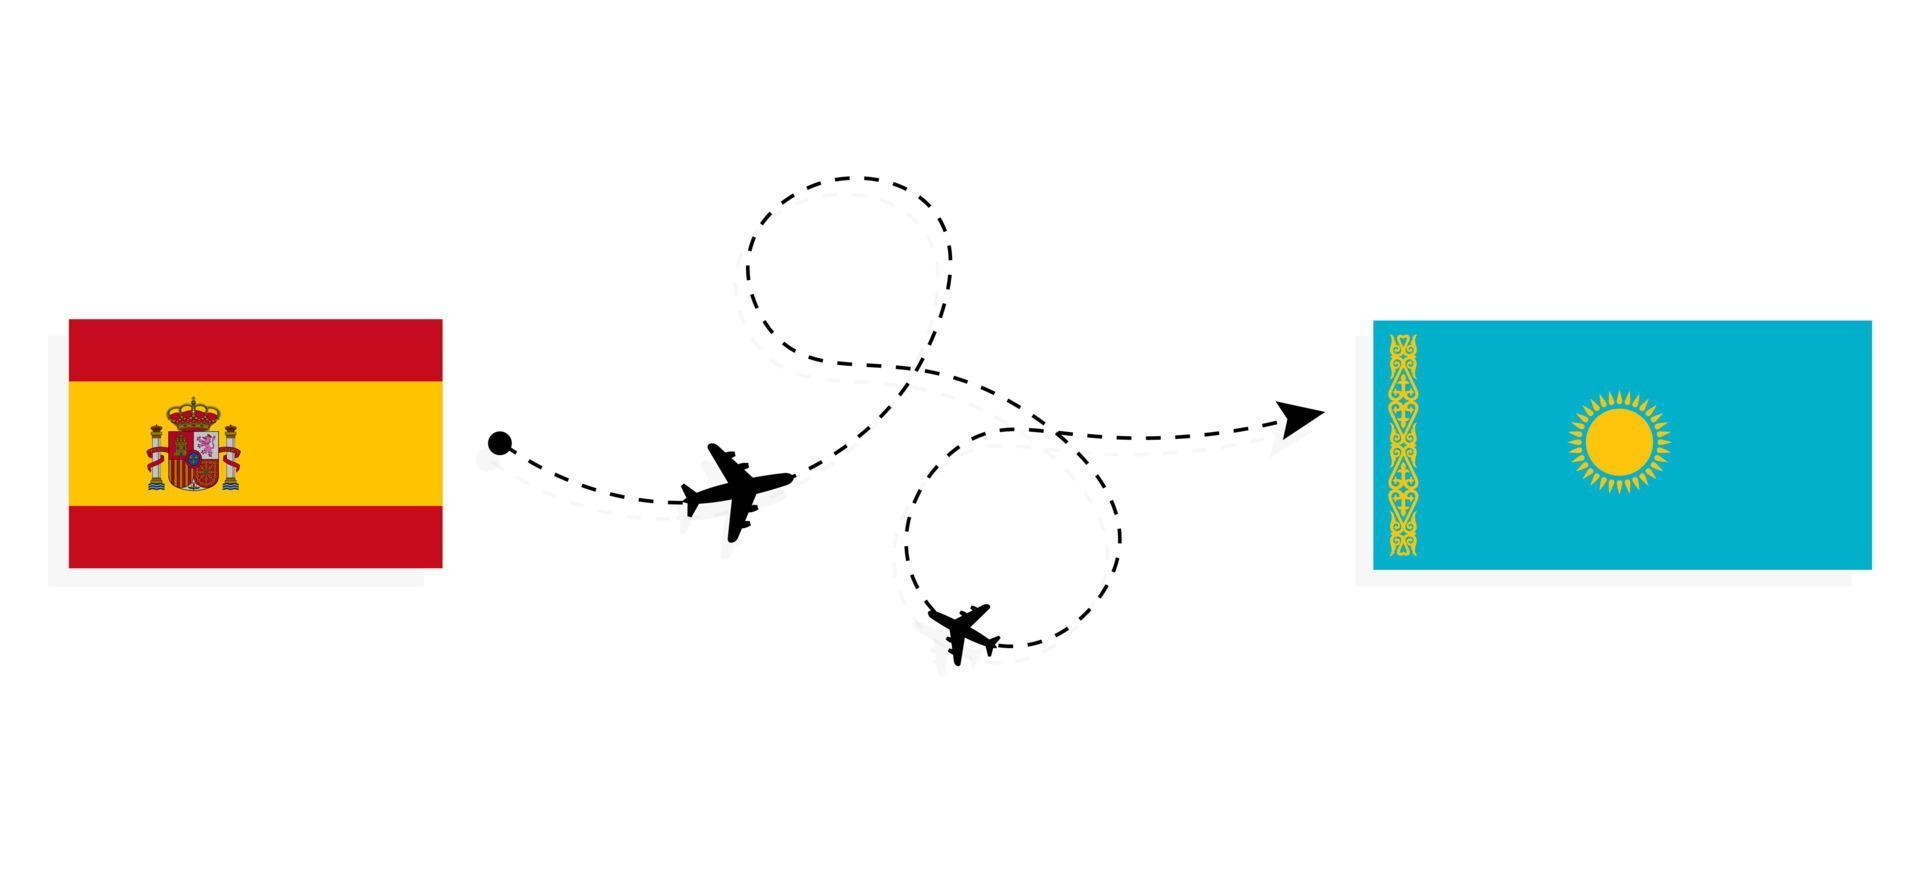 vol et voyage de l'espagne au kazakhstan par concept de voyage en avion de passagers vecteur